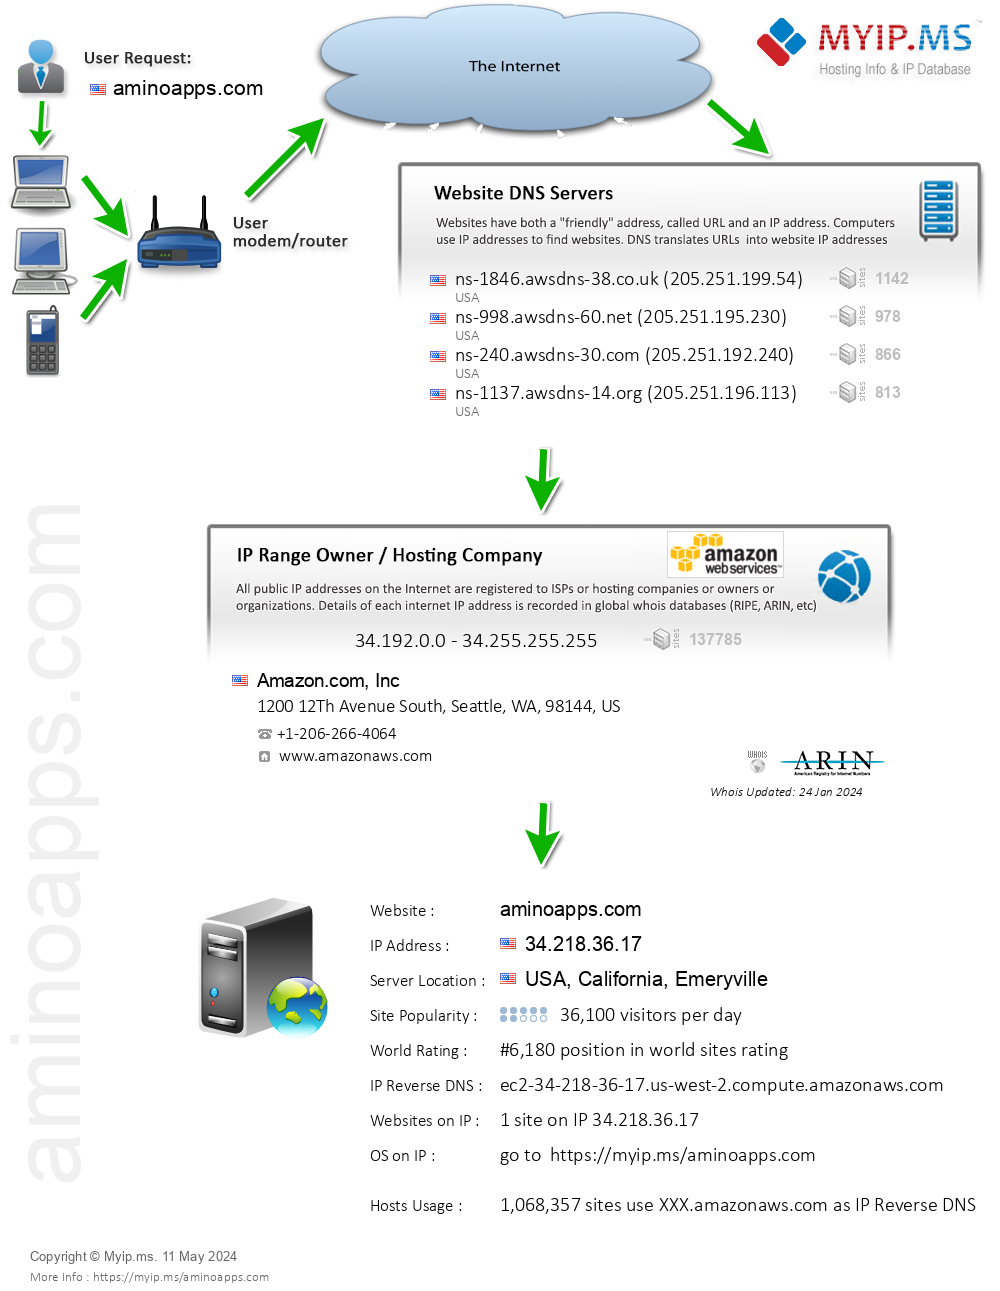 Aminoapps.com - Website Hosting Visual IP Diagram